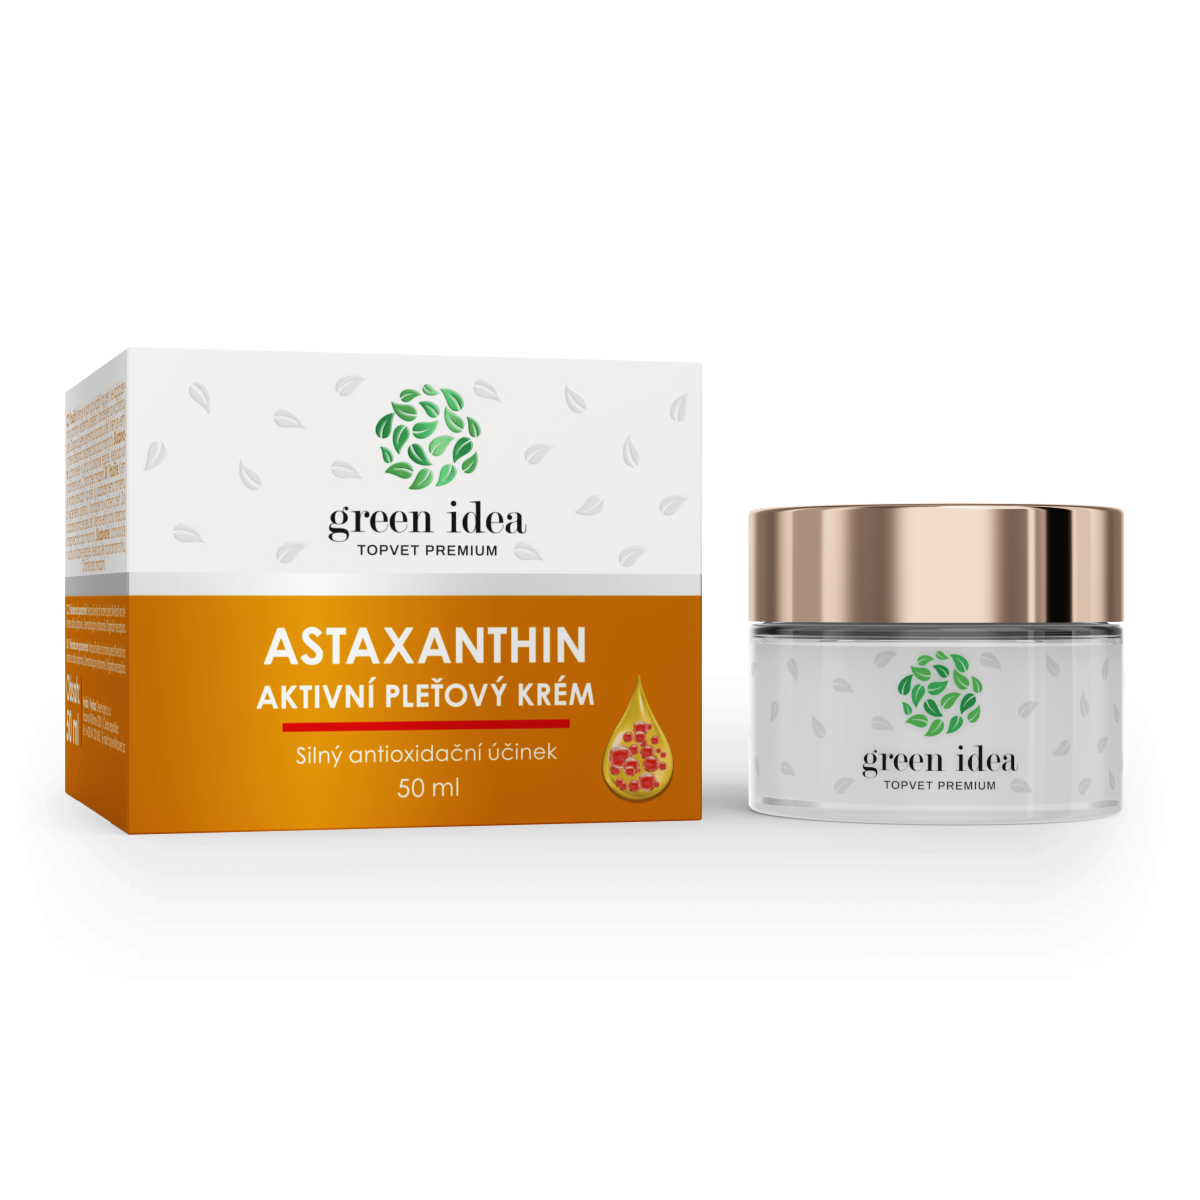 Astaxanthin - aktivní pleťový krém